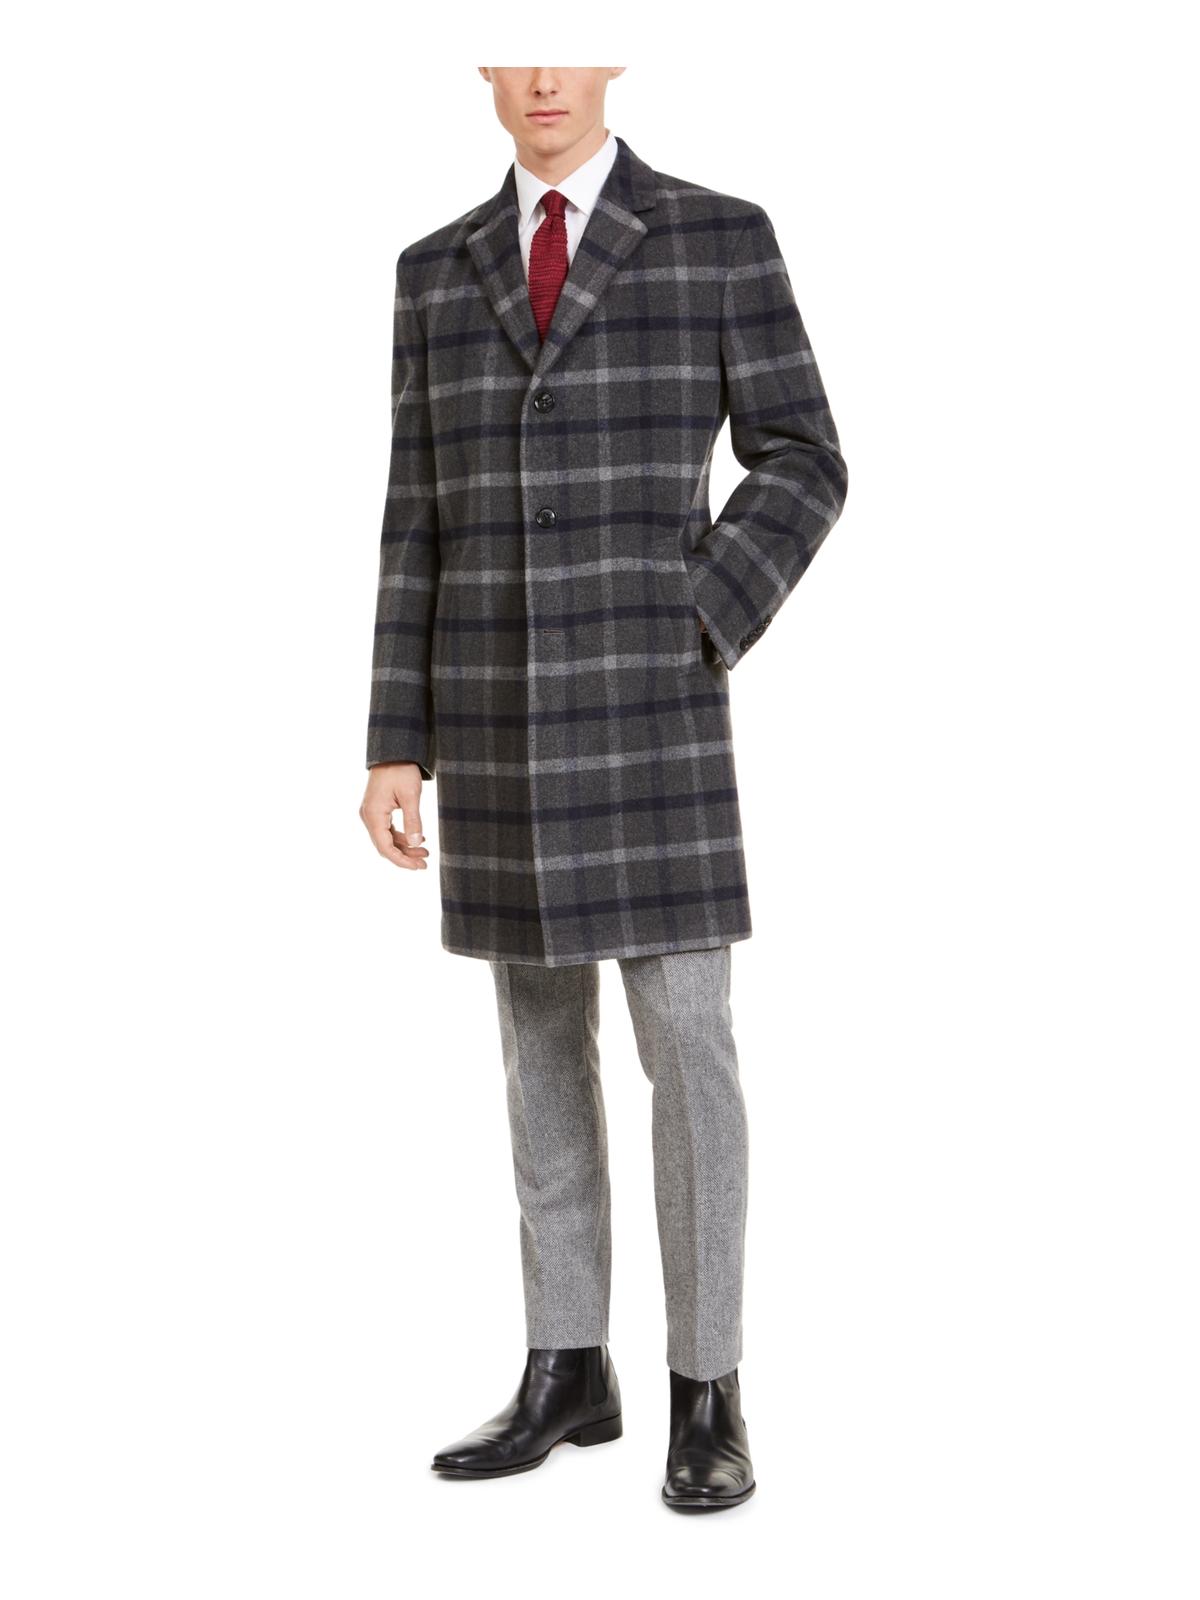 Tommy Hilfiger Mens Addison Wool Blend Modern Fit Top Coat - image 1 of 3